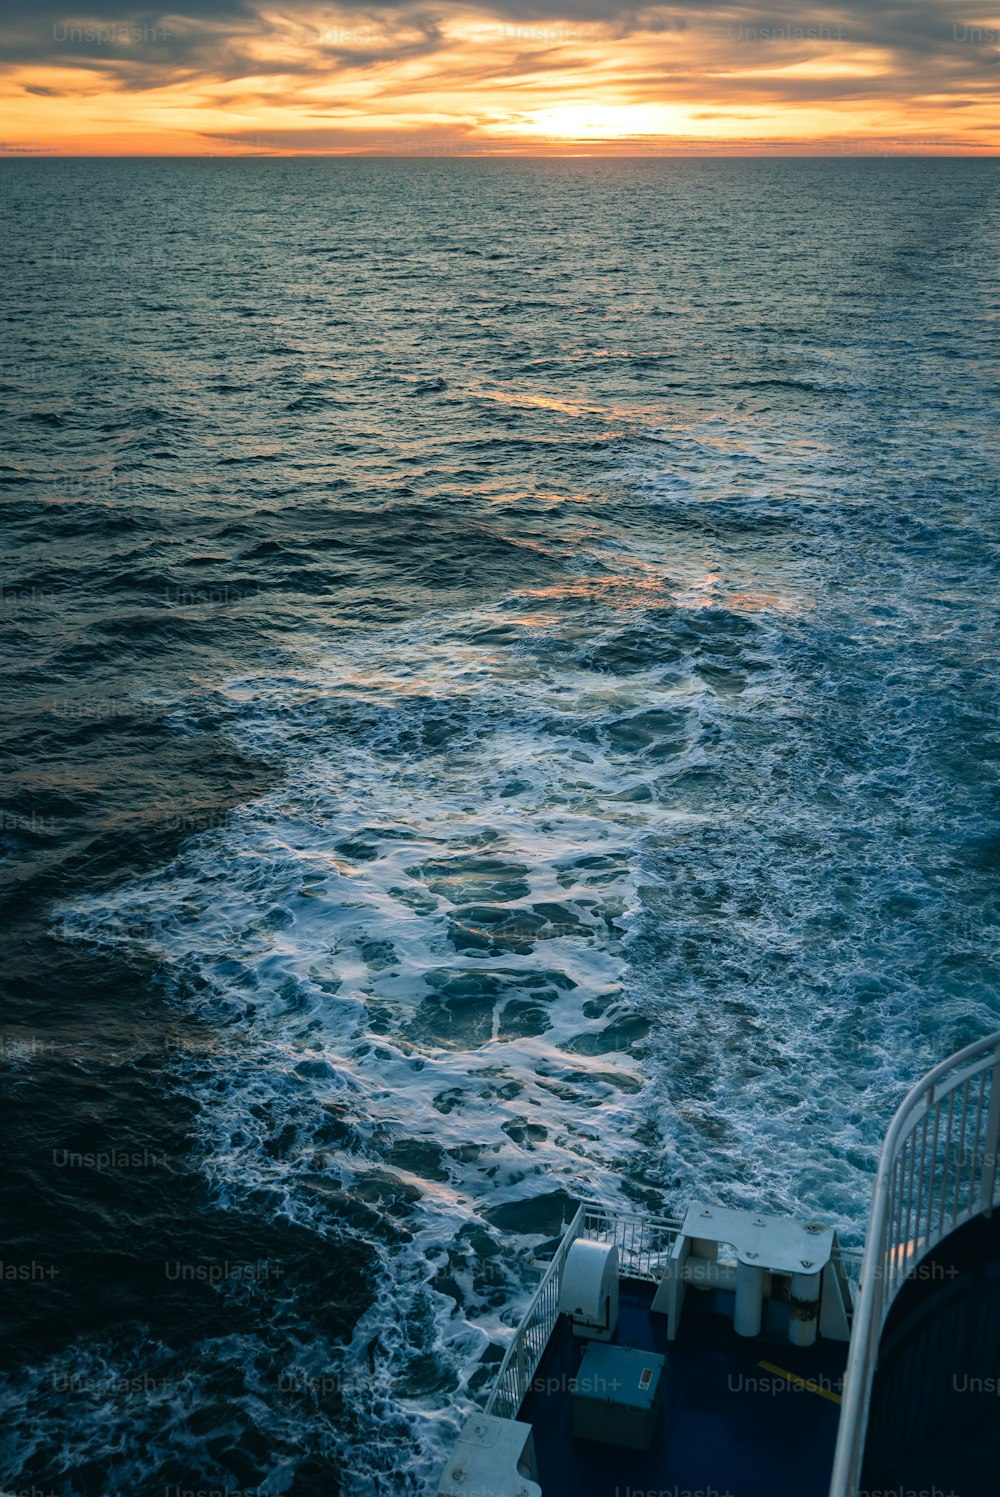 o sol está se pondo sobre o oceano como visto de um barco